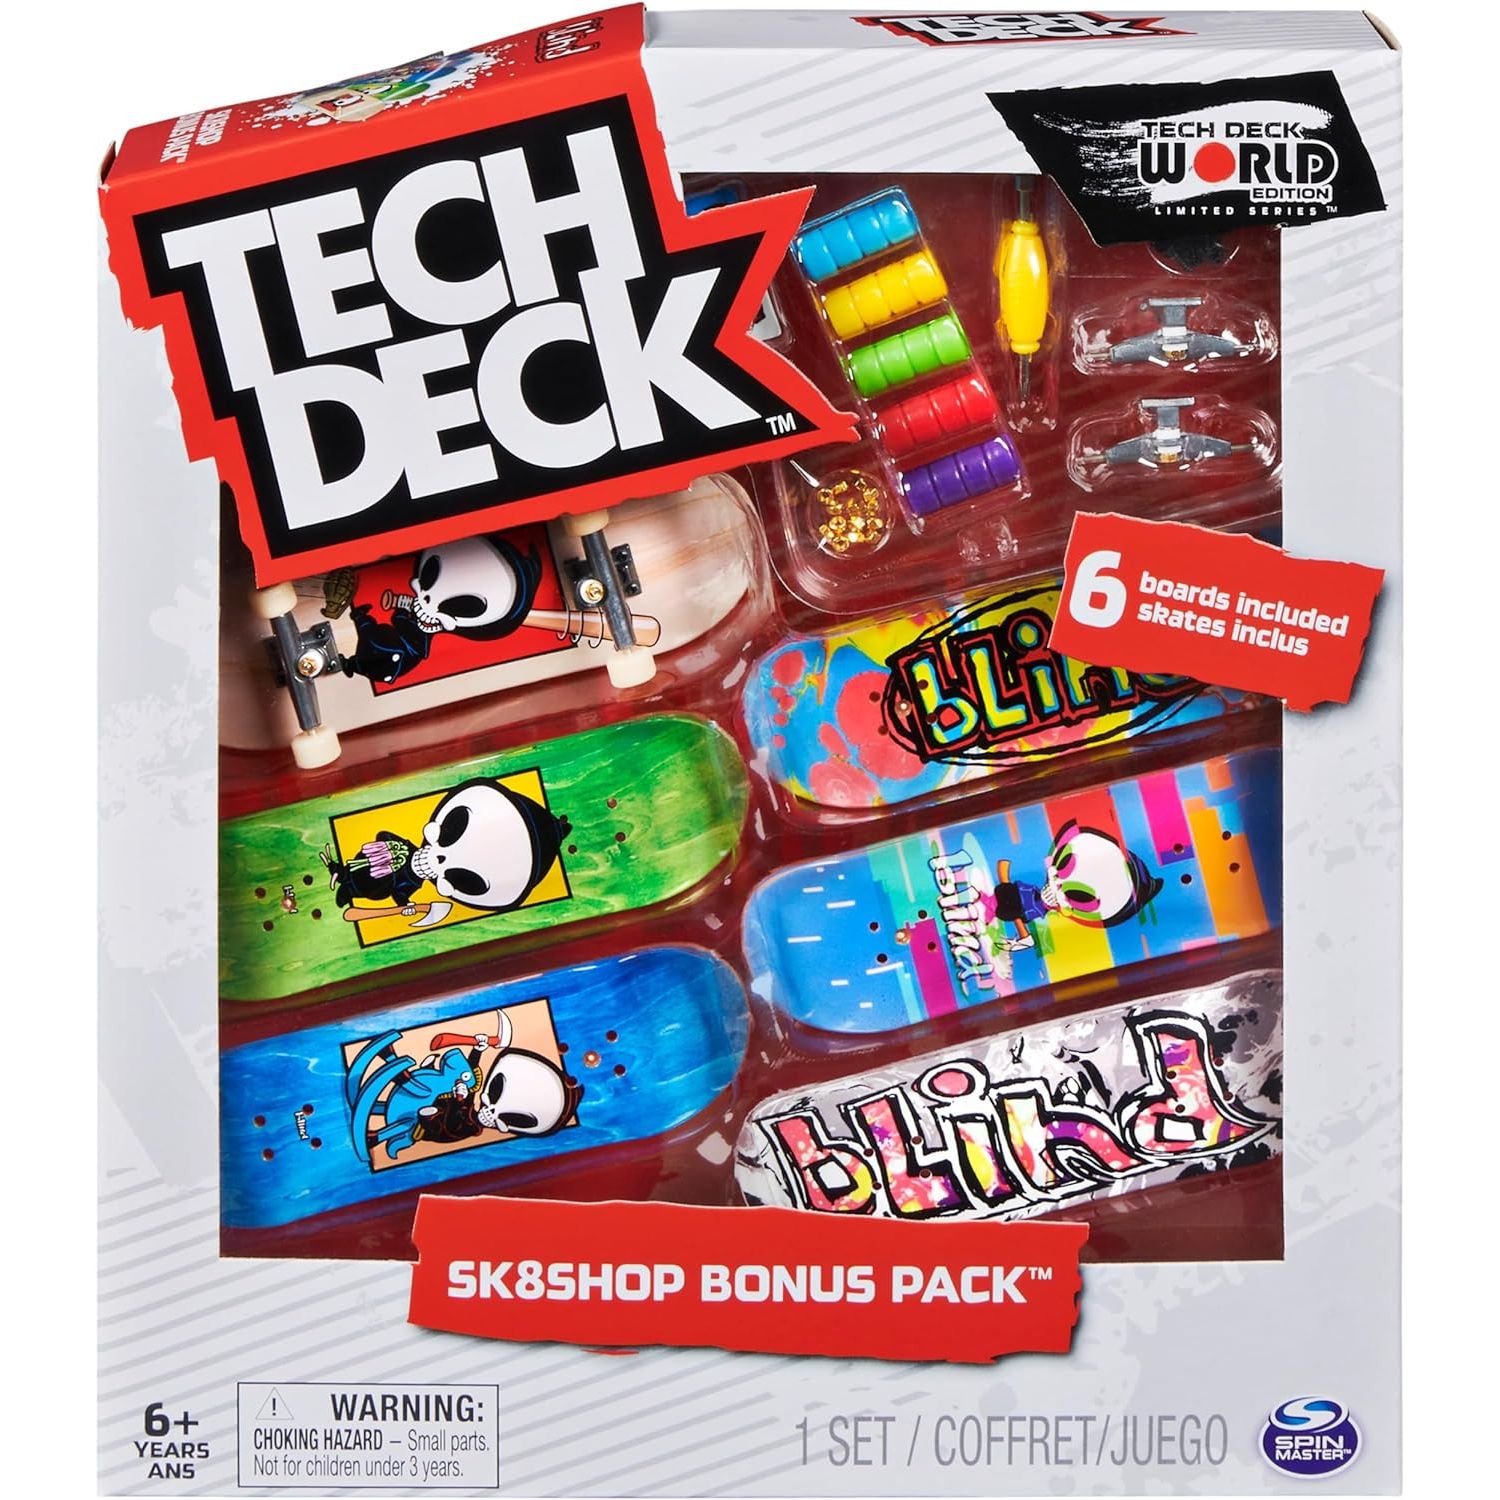 TECH DECK، حزمة Sk8shop الإضافية للوحة الأصابع، ألواح تزلج صغيرة قابلة للتجميع والتخصيص، ألعاب أطفال للأعمار من 6 سنوات فما فوق (قد تختلف الأنماط)